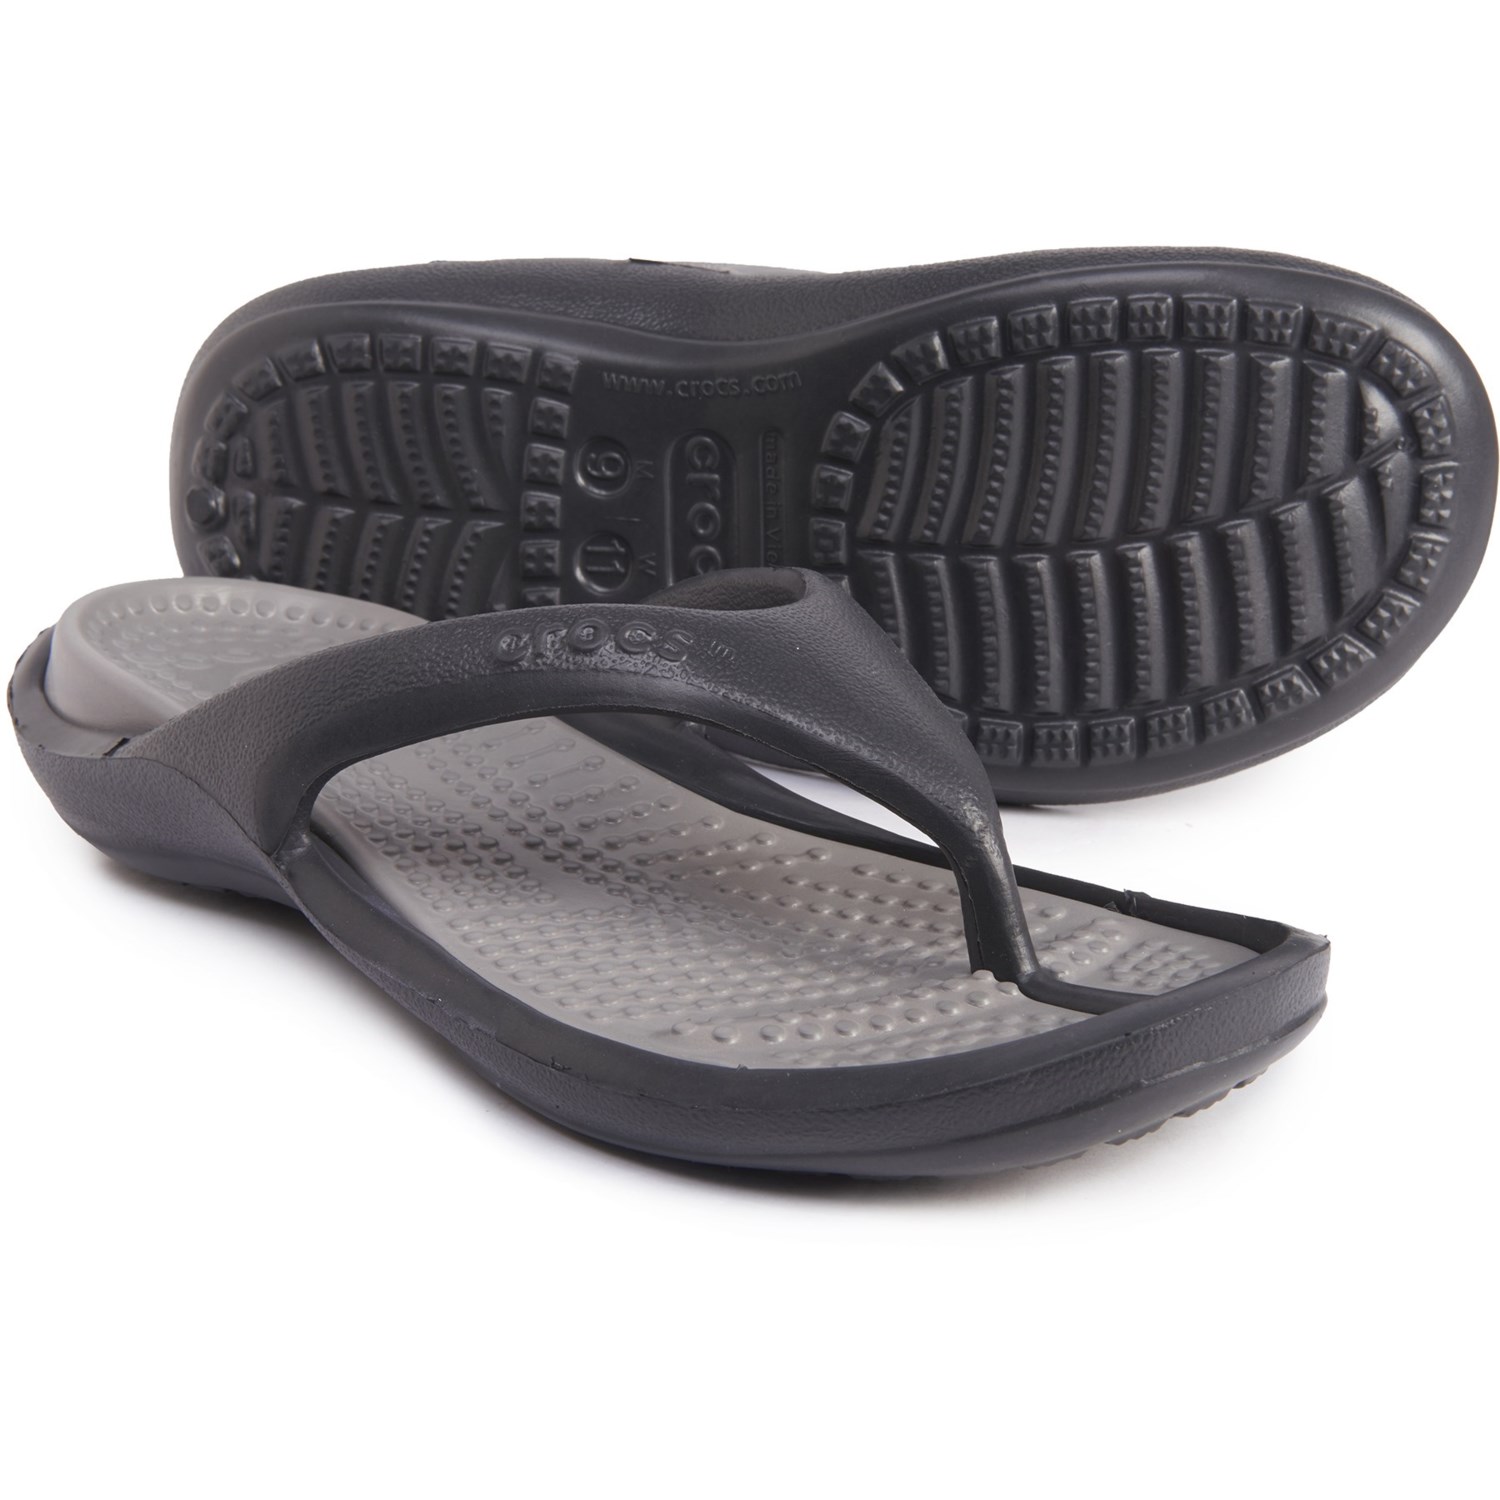 Crocs Athens Flip-Flops (For Men) - Save 43%